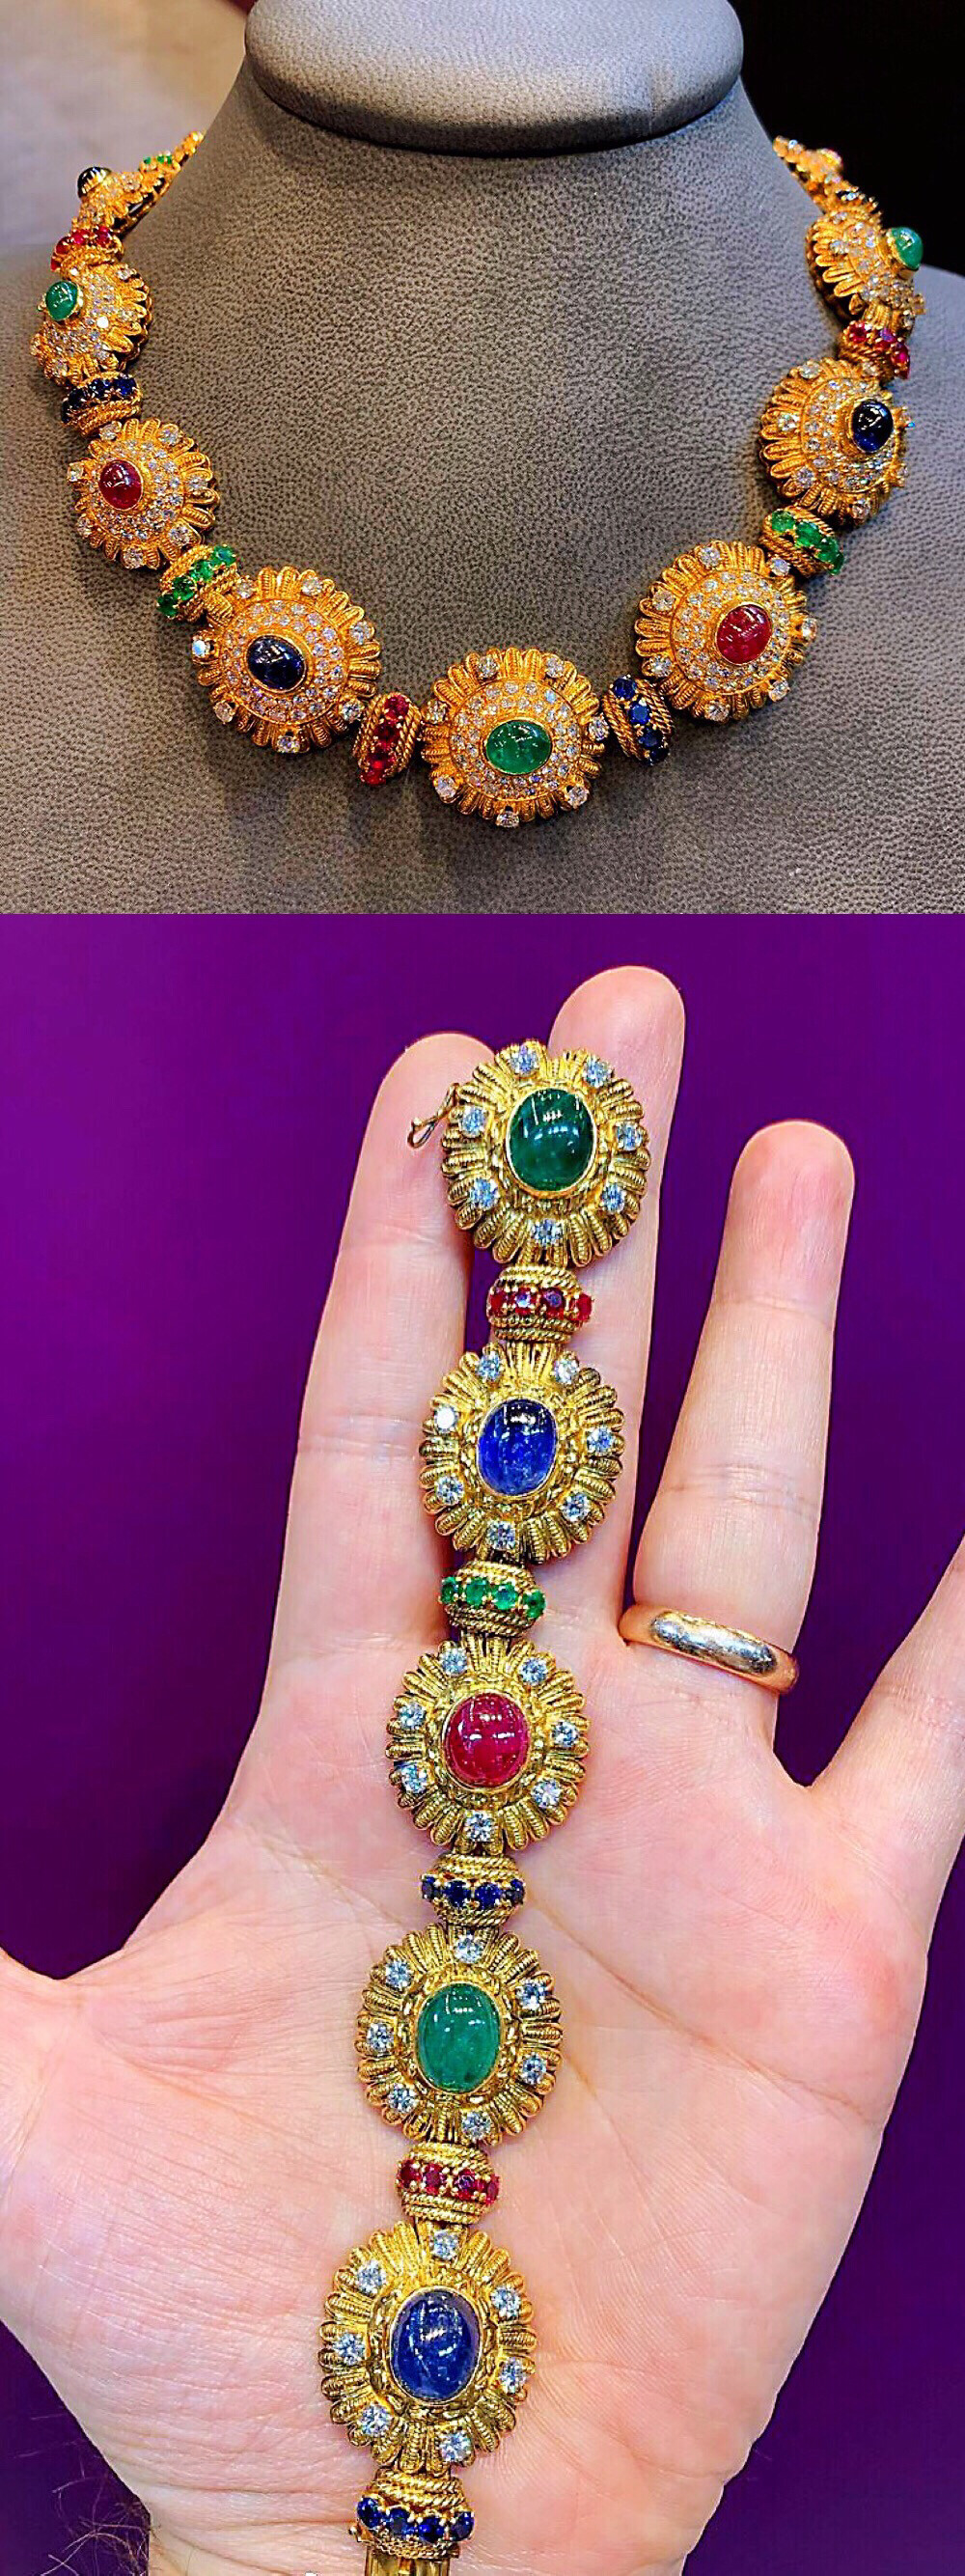 曾属于希腊末代王后安妮-玛丽的黄金彩宝套装，来自梵克雅宝，材质是黄金+红宝、蓝宝以及祖母绿，包括可以拆成两条手链的项链、手链、红宝耳环以及红宝戒指，约制作于1965年